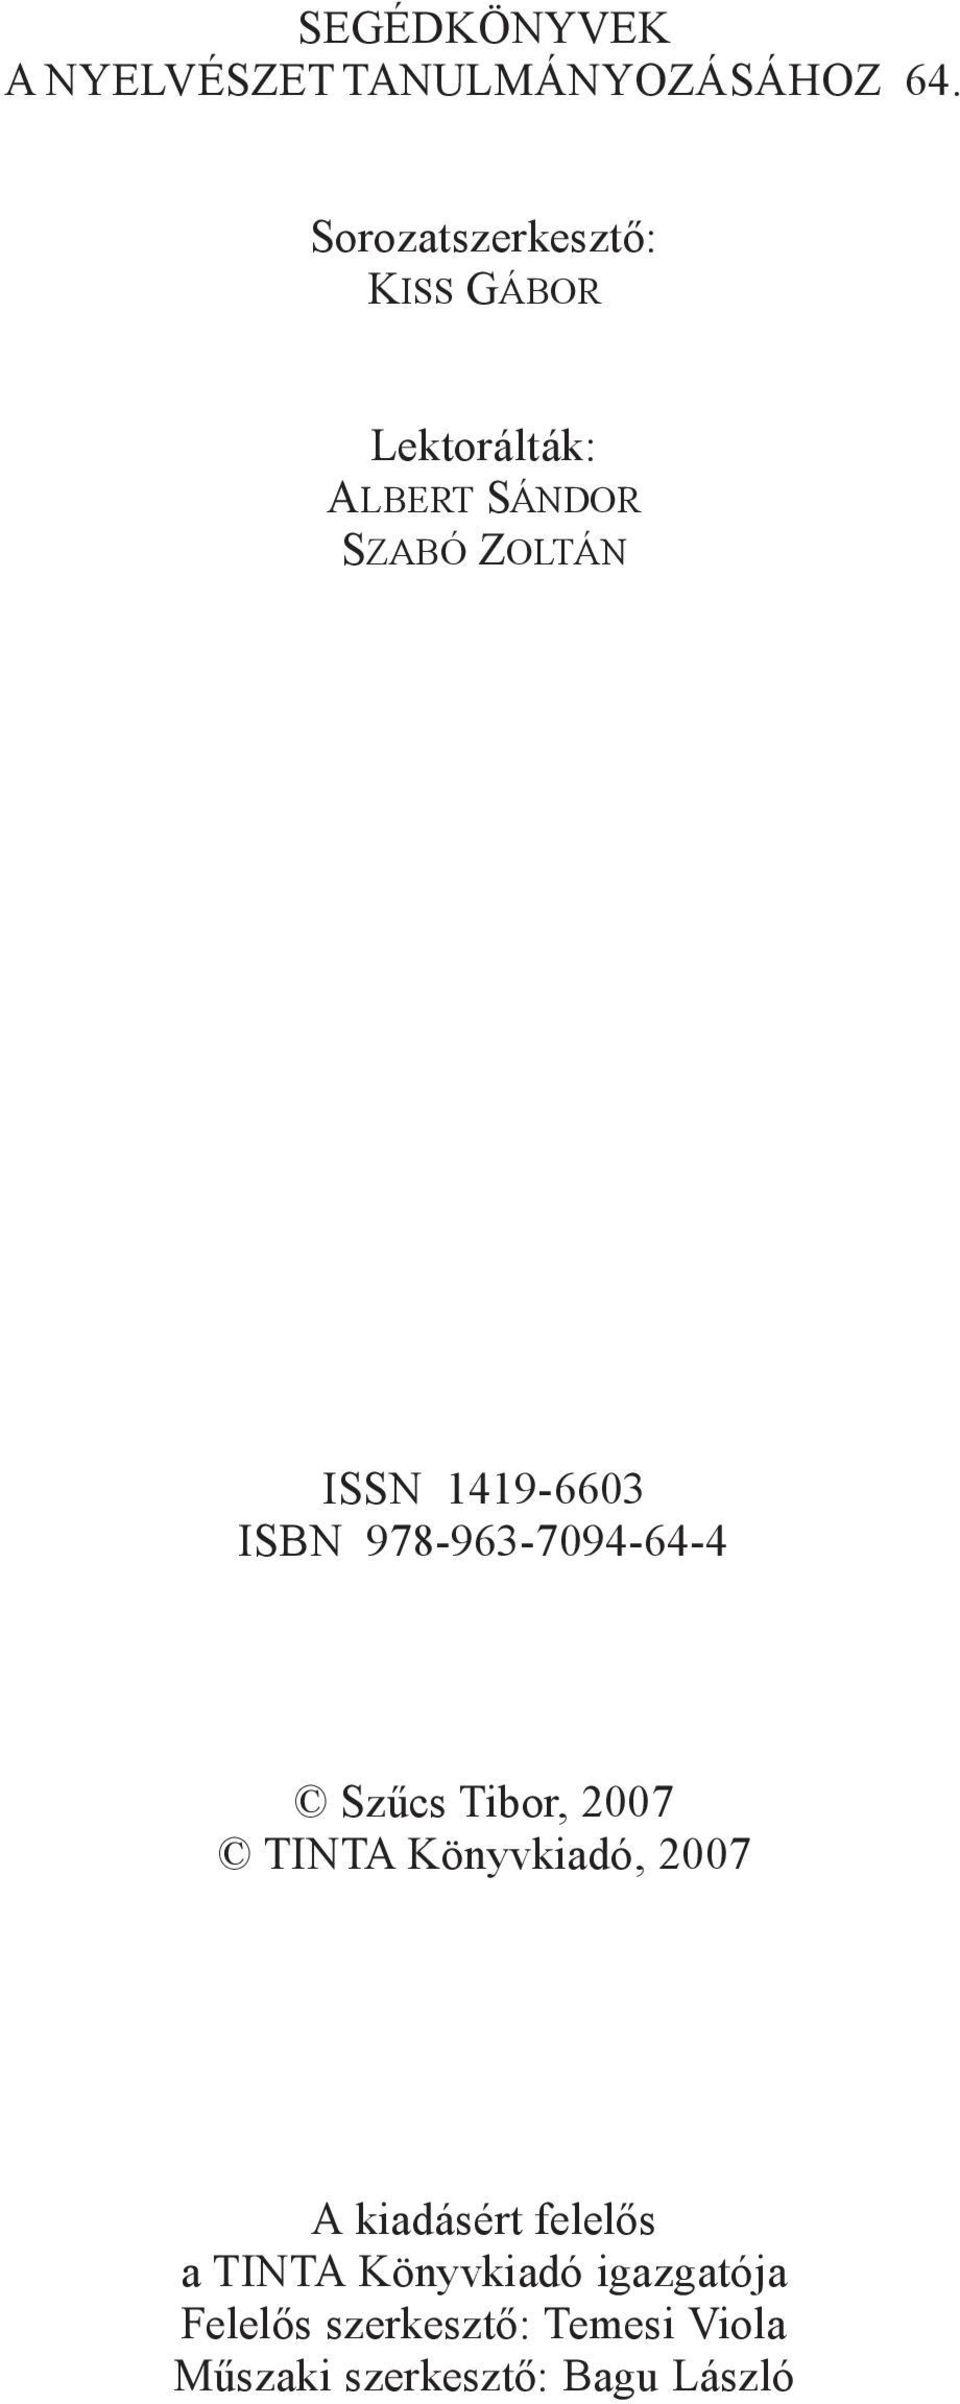 Sorozatszerkesztõ: KISS GÁBOR Lektorálták: ALBERT SÁNDOR SZABÓ ZOLTÁN ISSN 1419-6603 ISBN